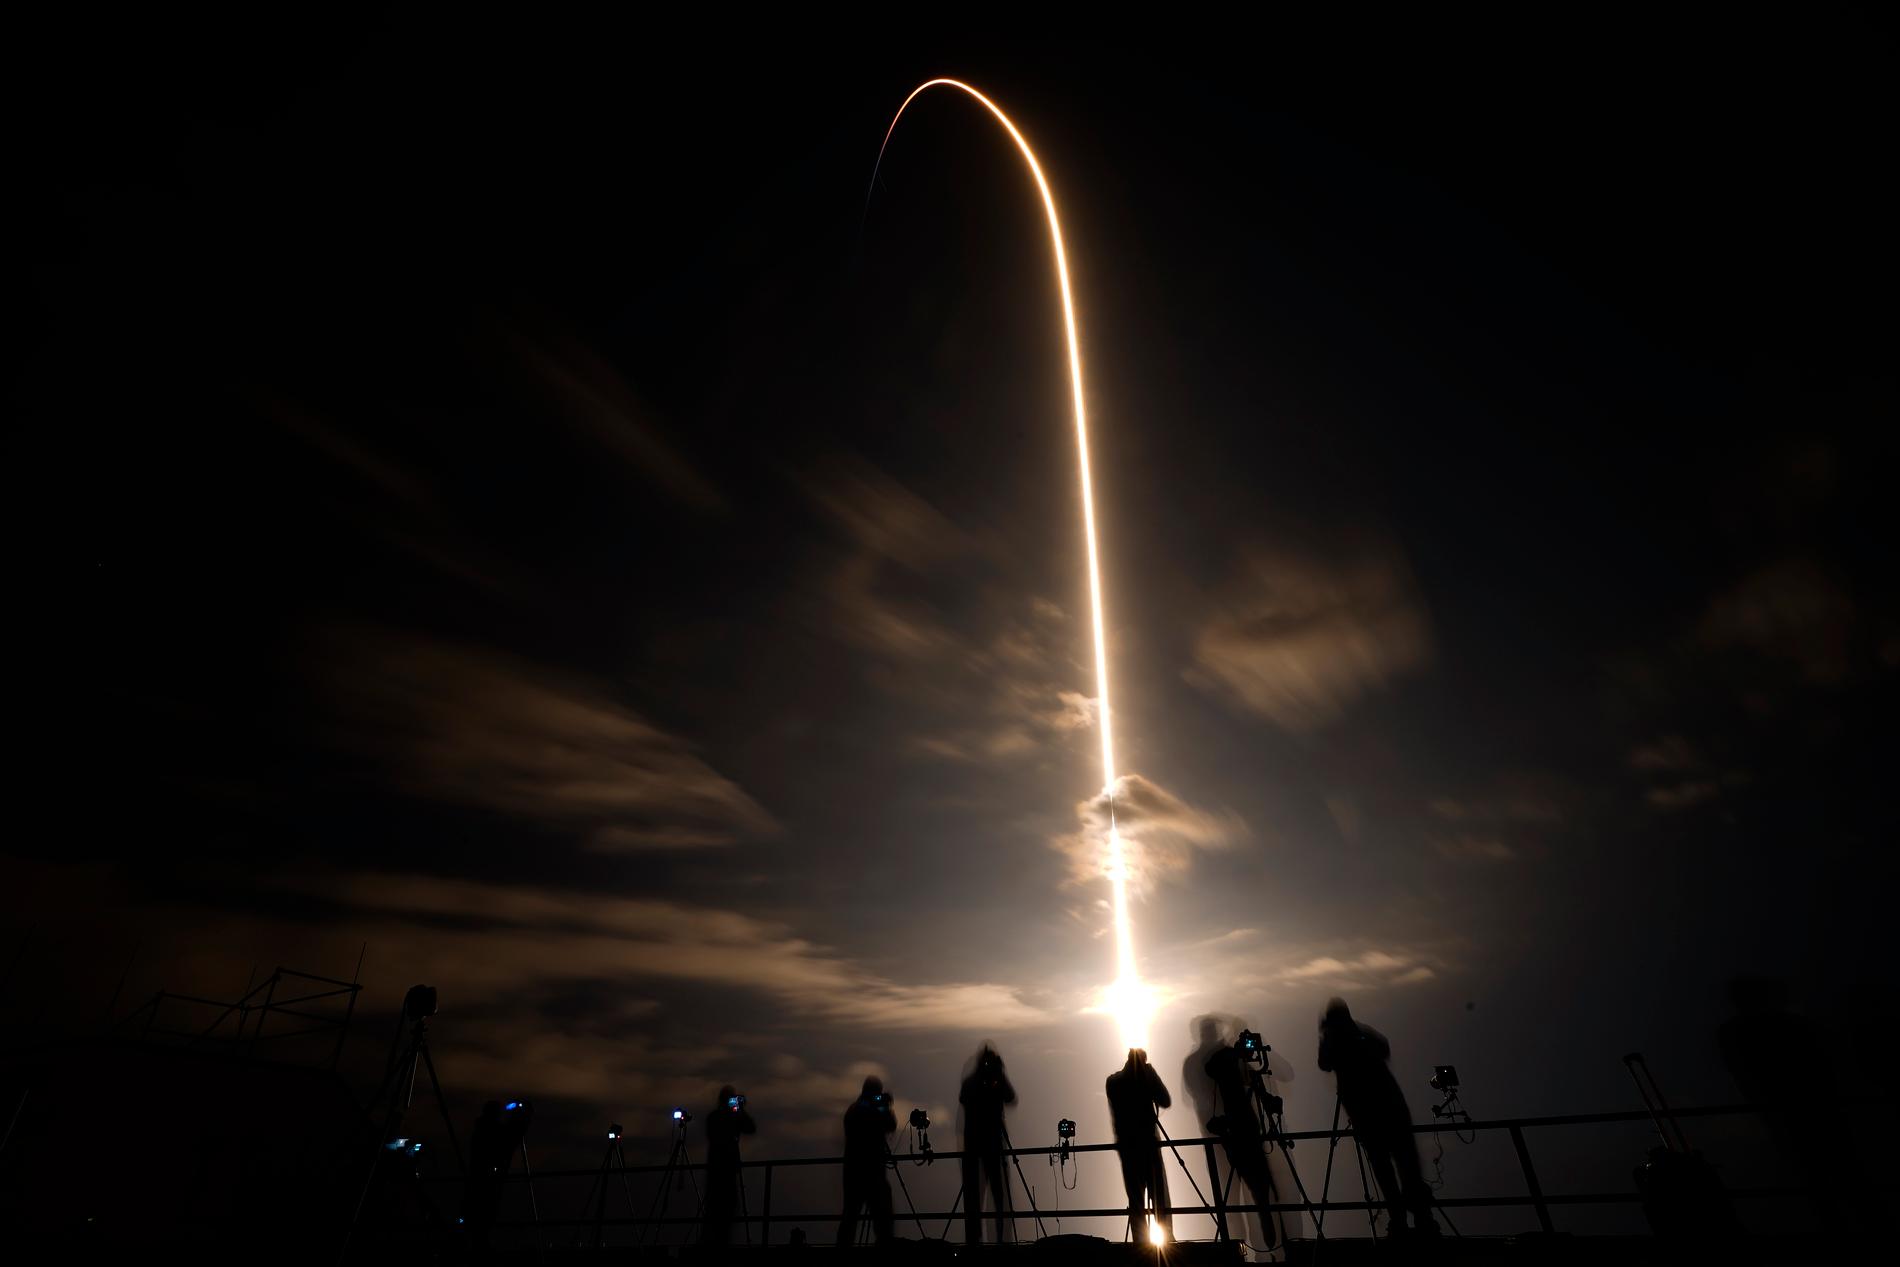 Foto taget med lång exponeringstid när Falcon 9-raketen stiger från Cape Canaveral i Florida.